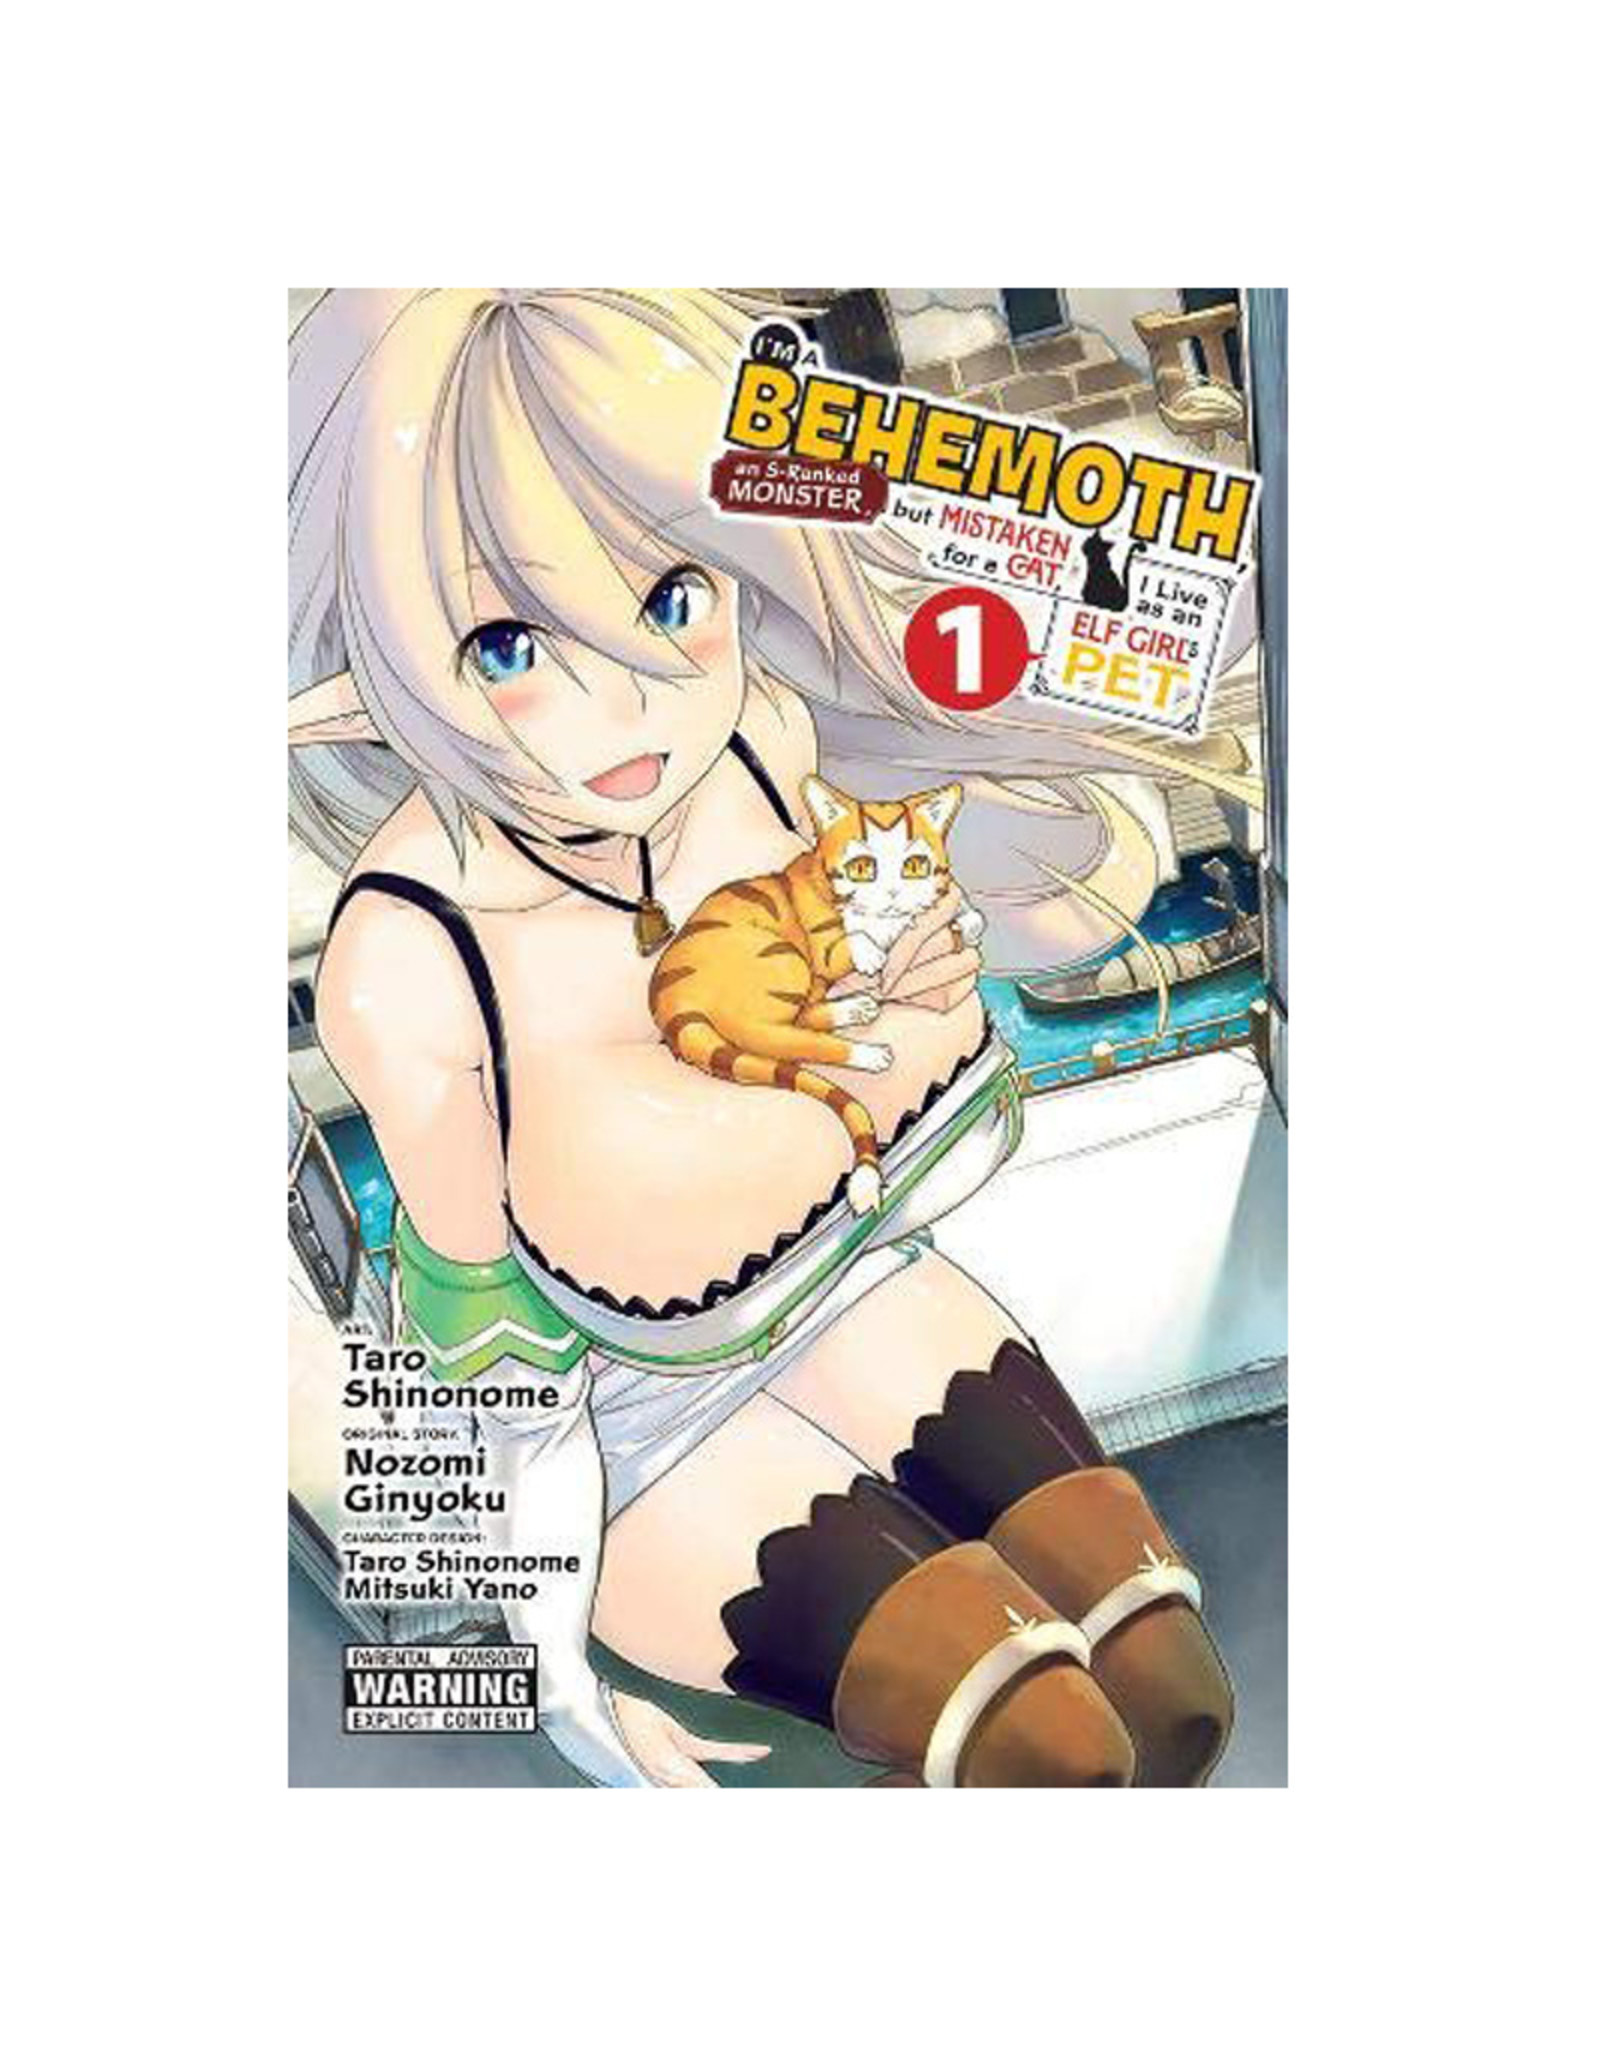 Yen Press I'm a Behemoth, an S-Ranked Monster, but Mistaken for a Cat, I Live as an Elf Girl's Pet Volume 01